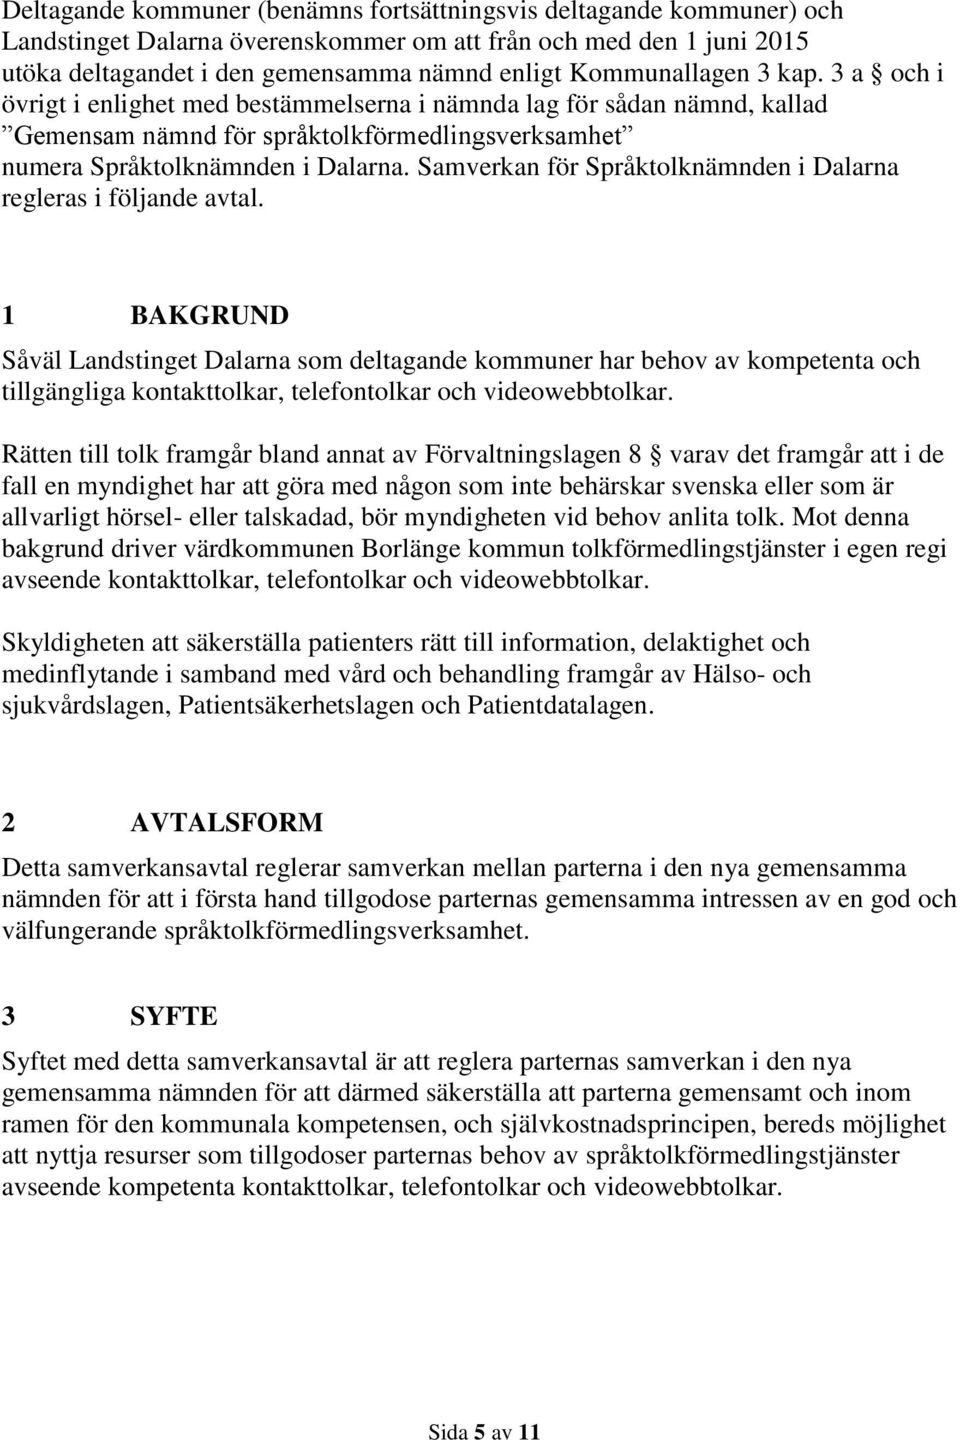 Samverkan för Språktolknämnden i Dalarna regleras i följande avtal.